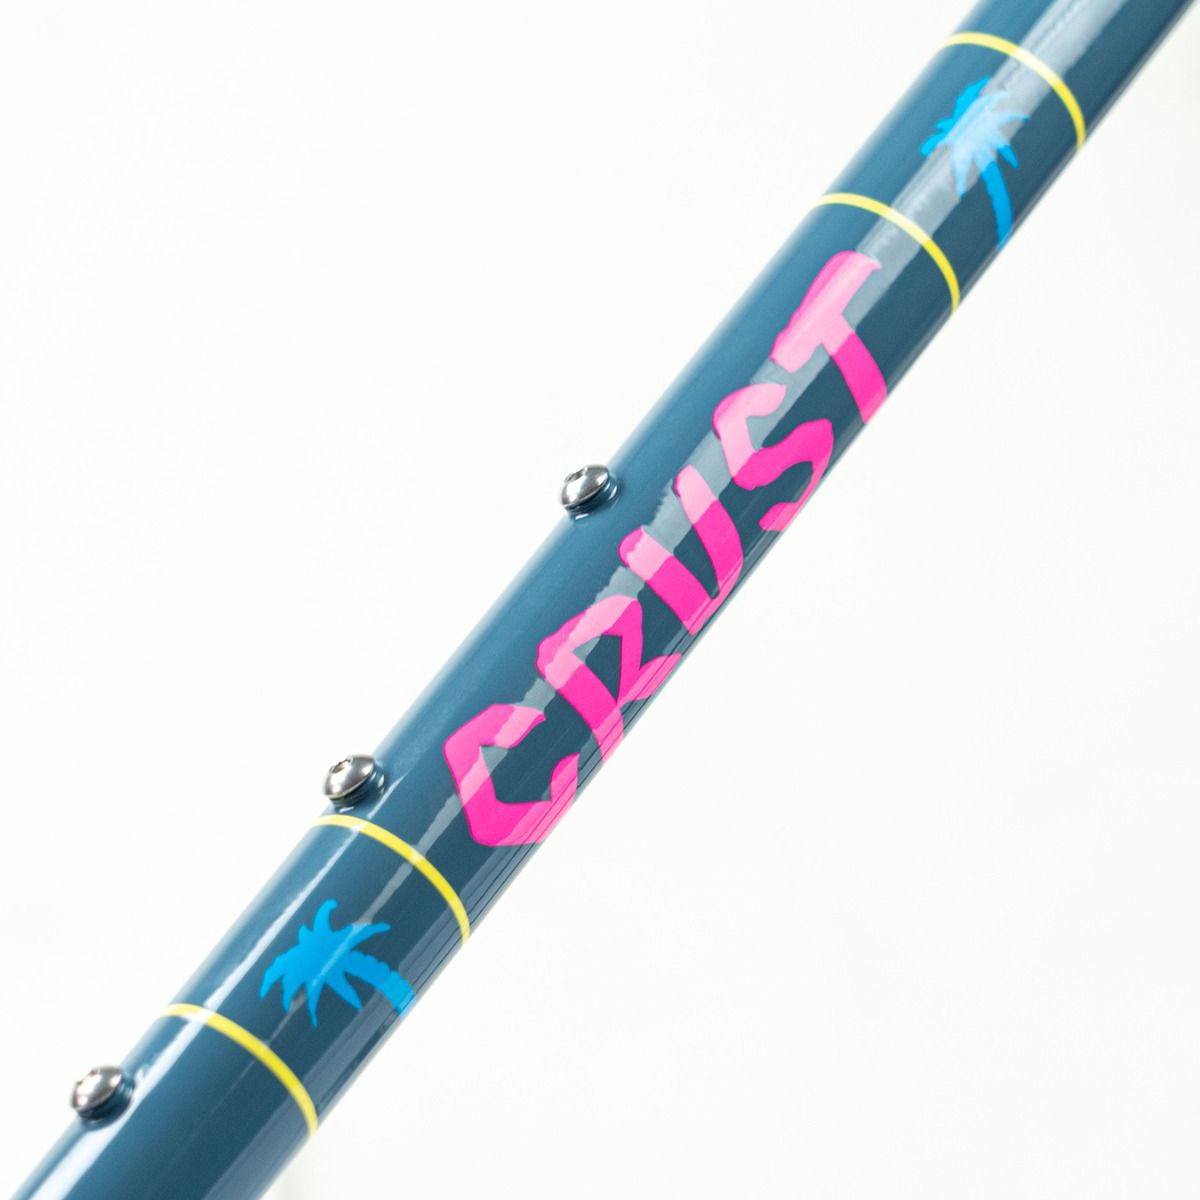 Crust Bikes - Evasion (bluish grey)